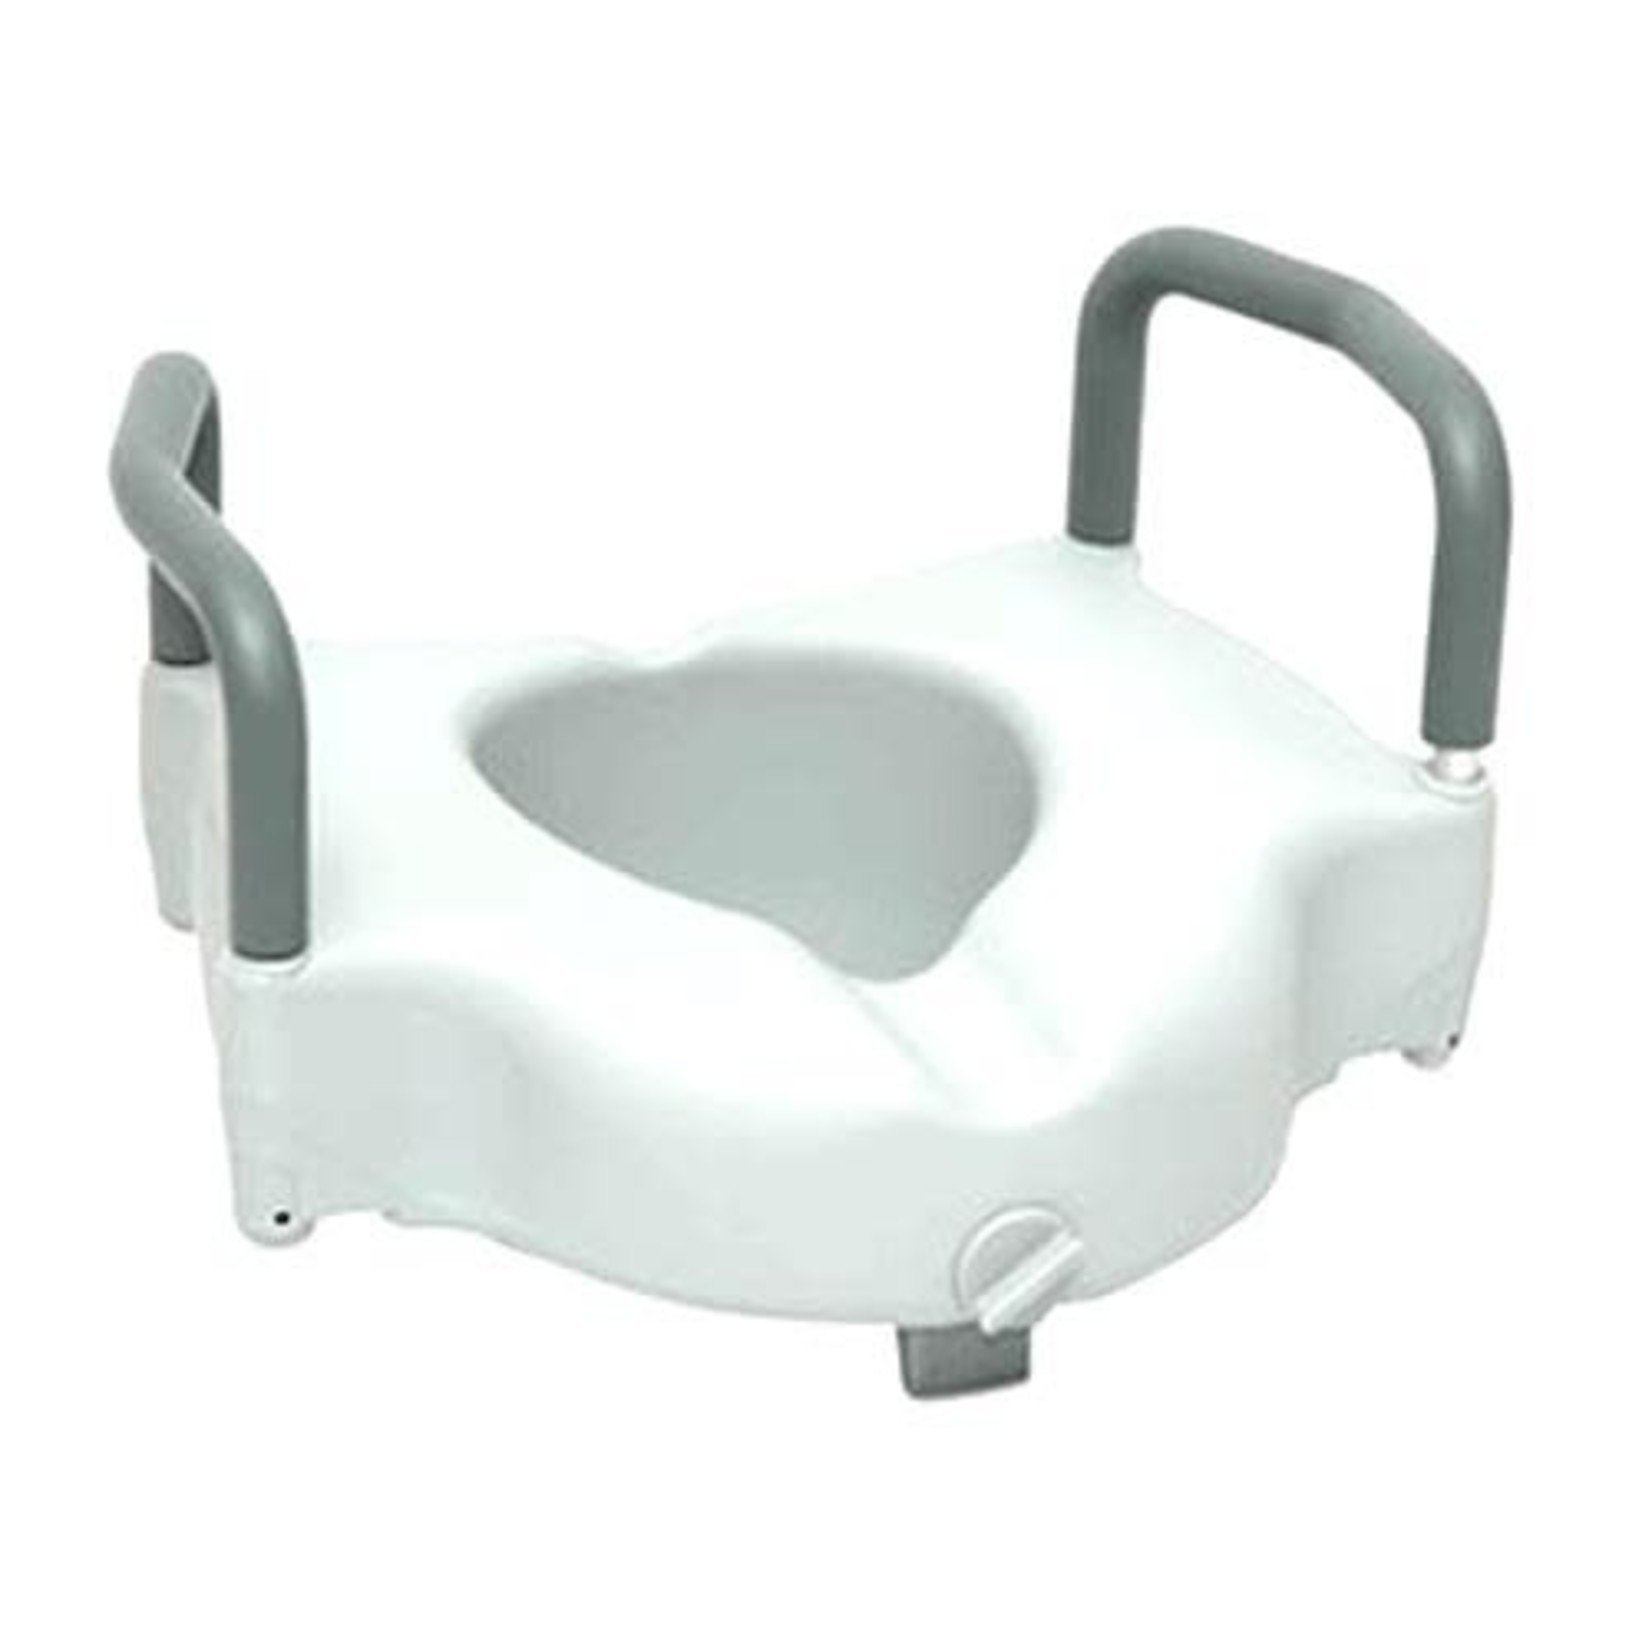 Medline Universal Raised Toilet Seat